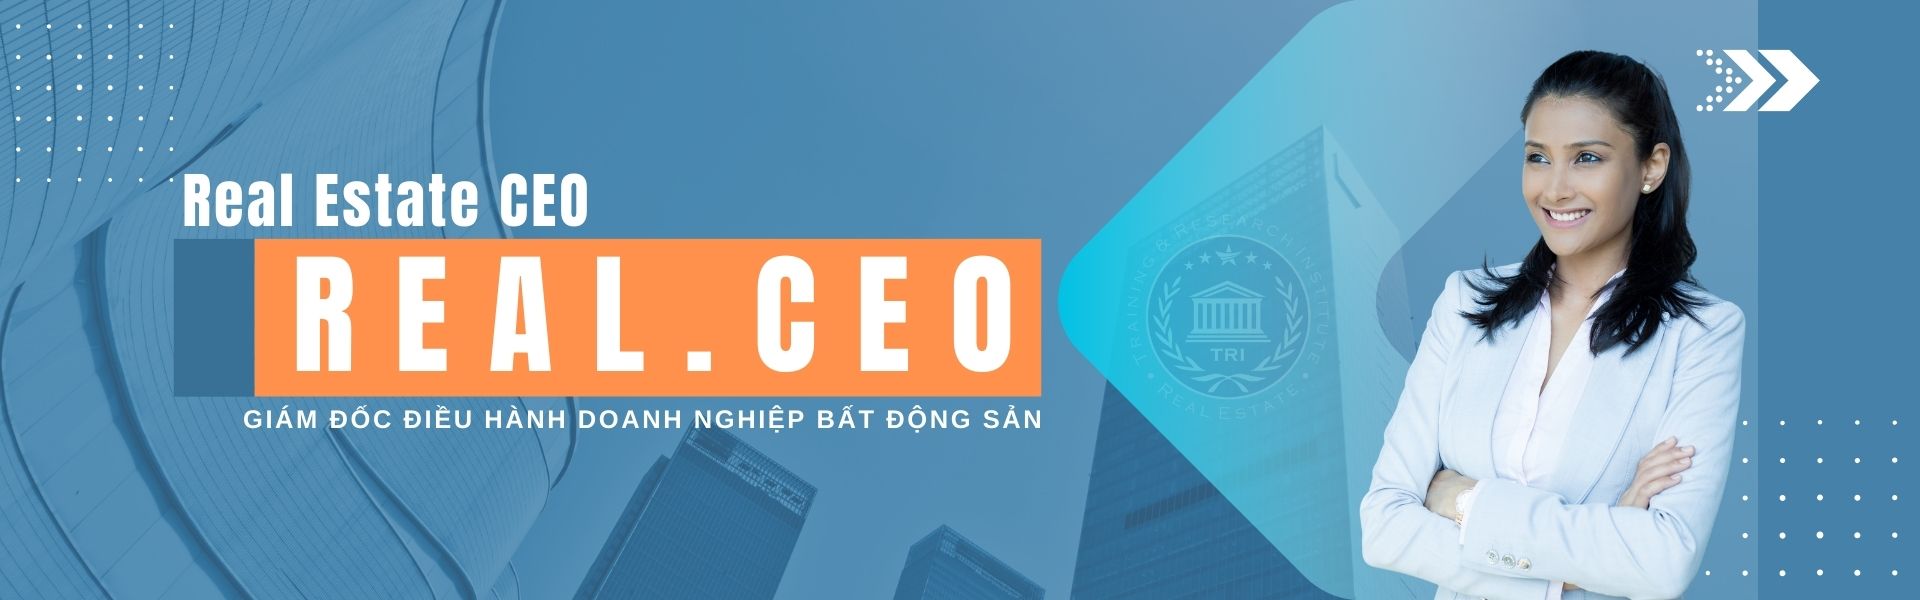 CEO Bat Dong San REAL.CEO